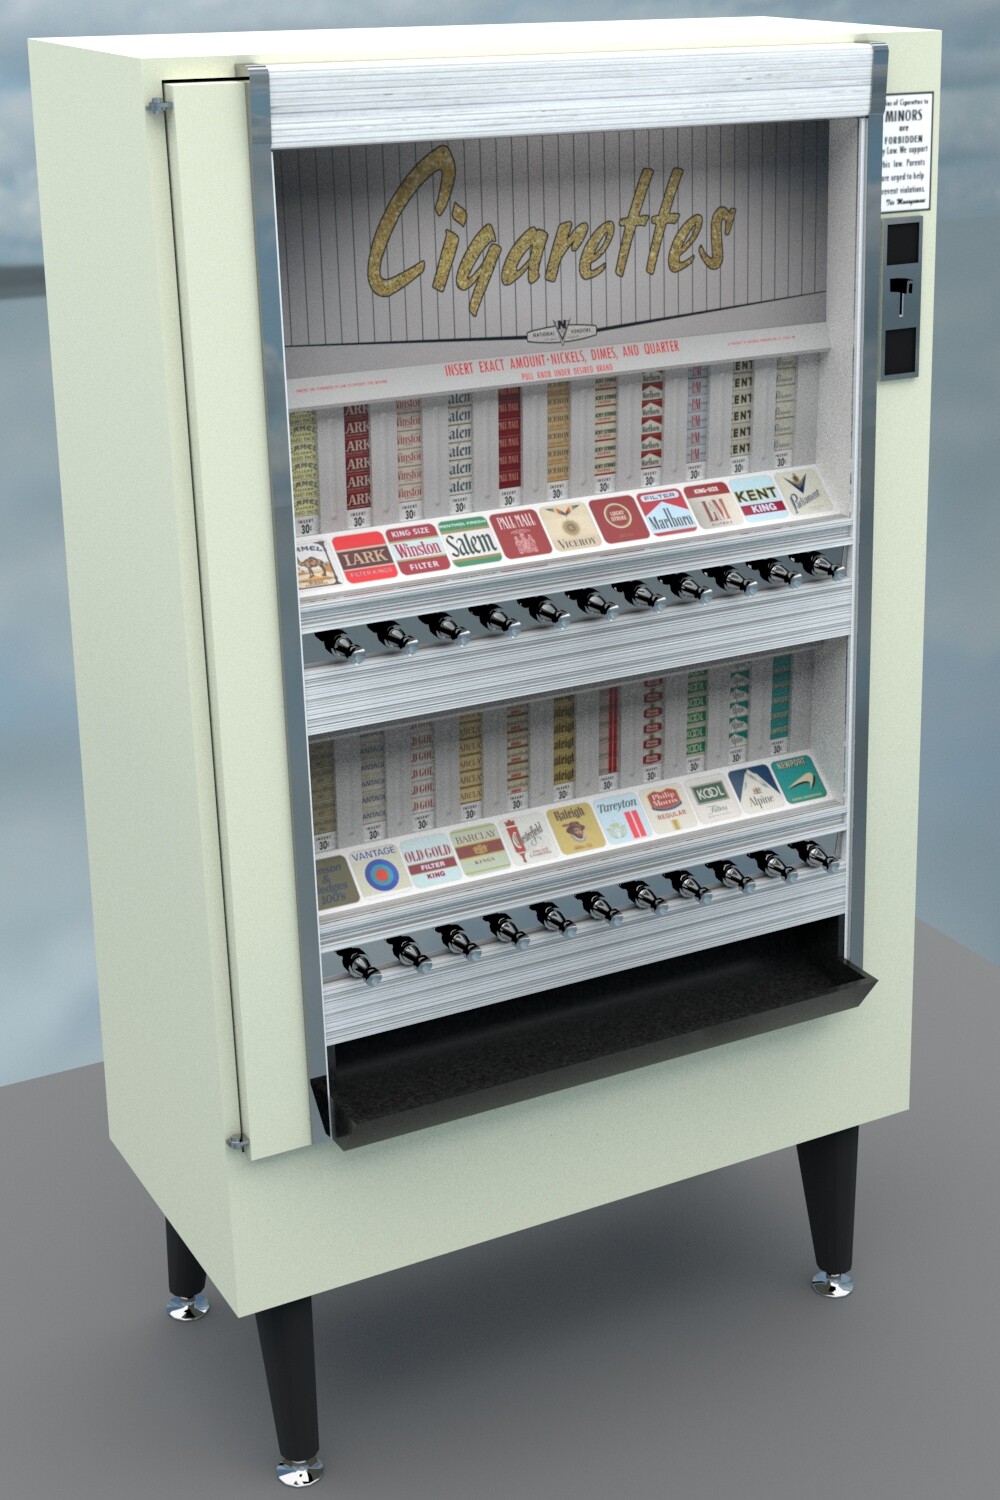 Cigarette Machine
4982 tris